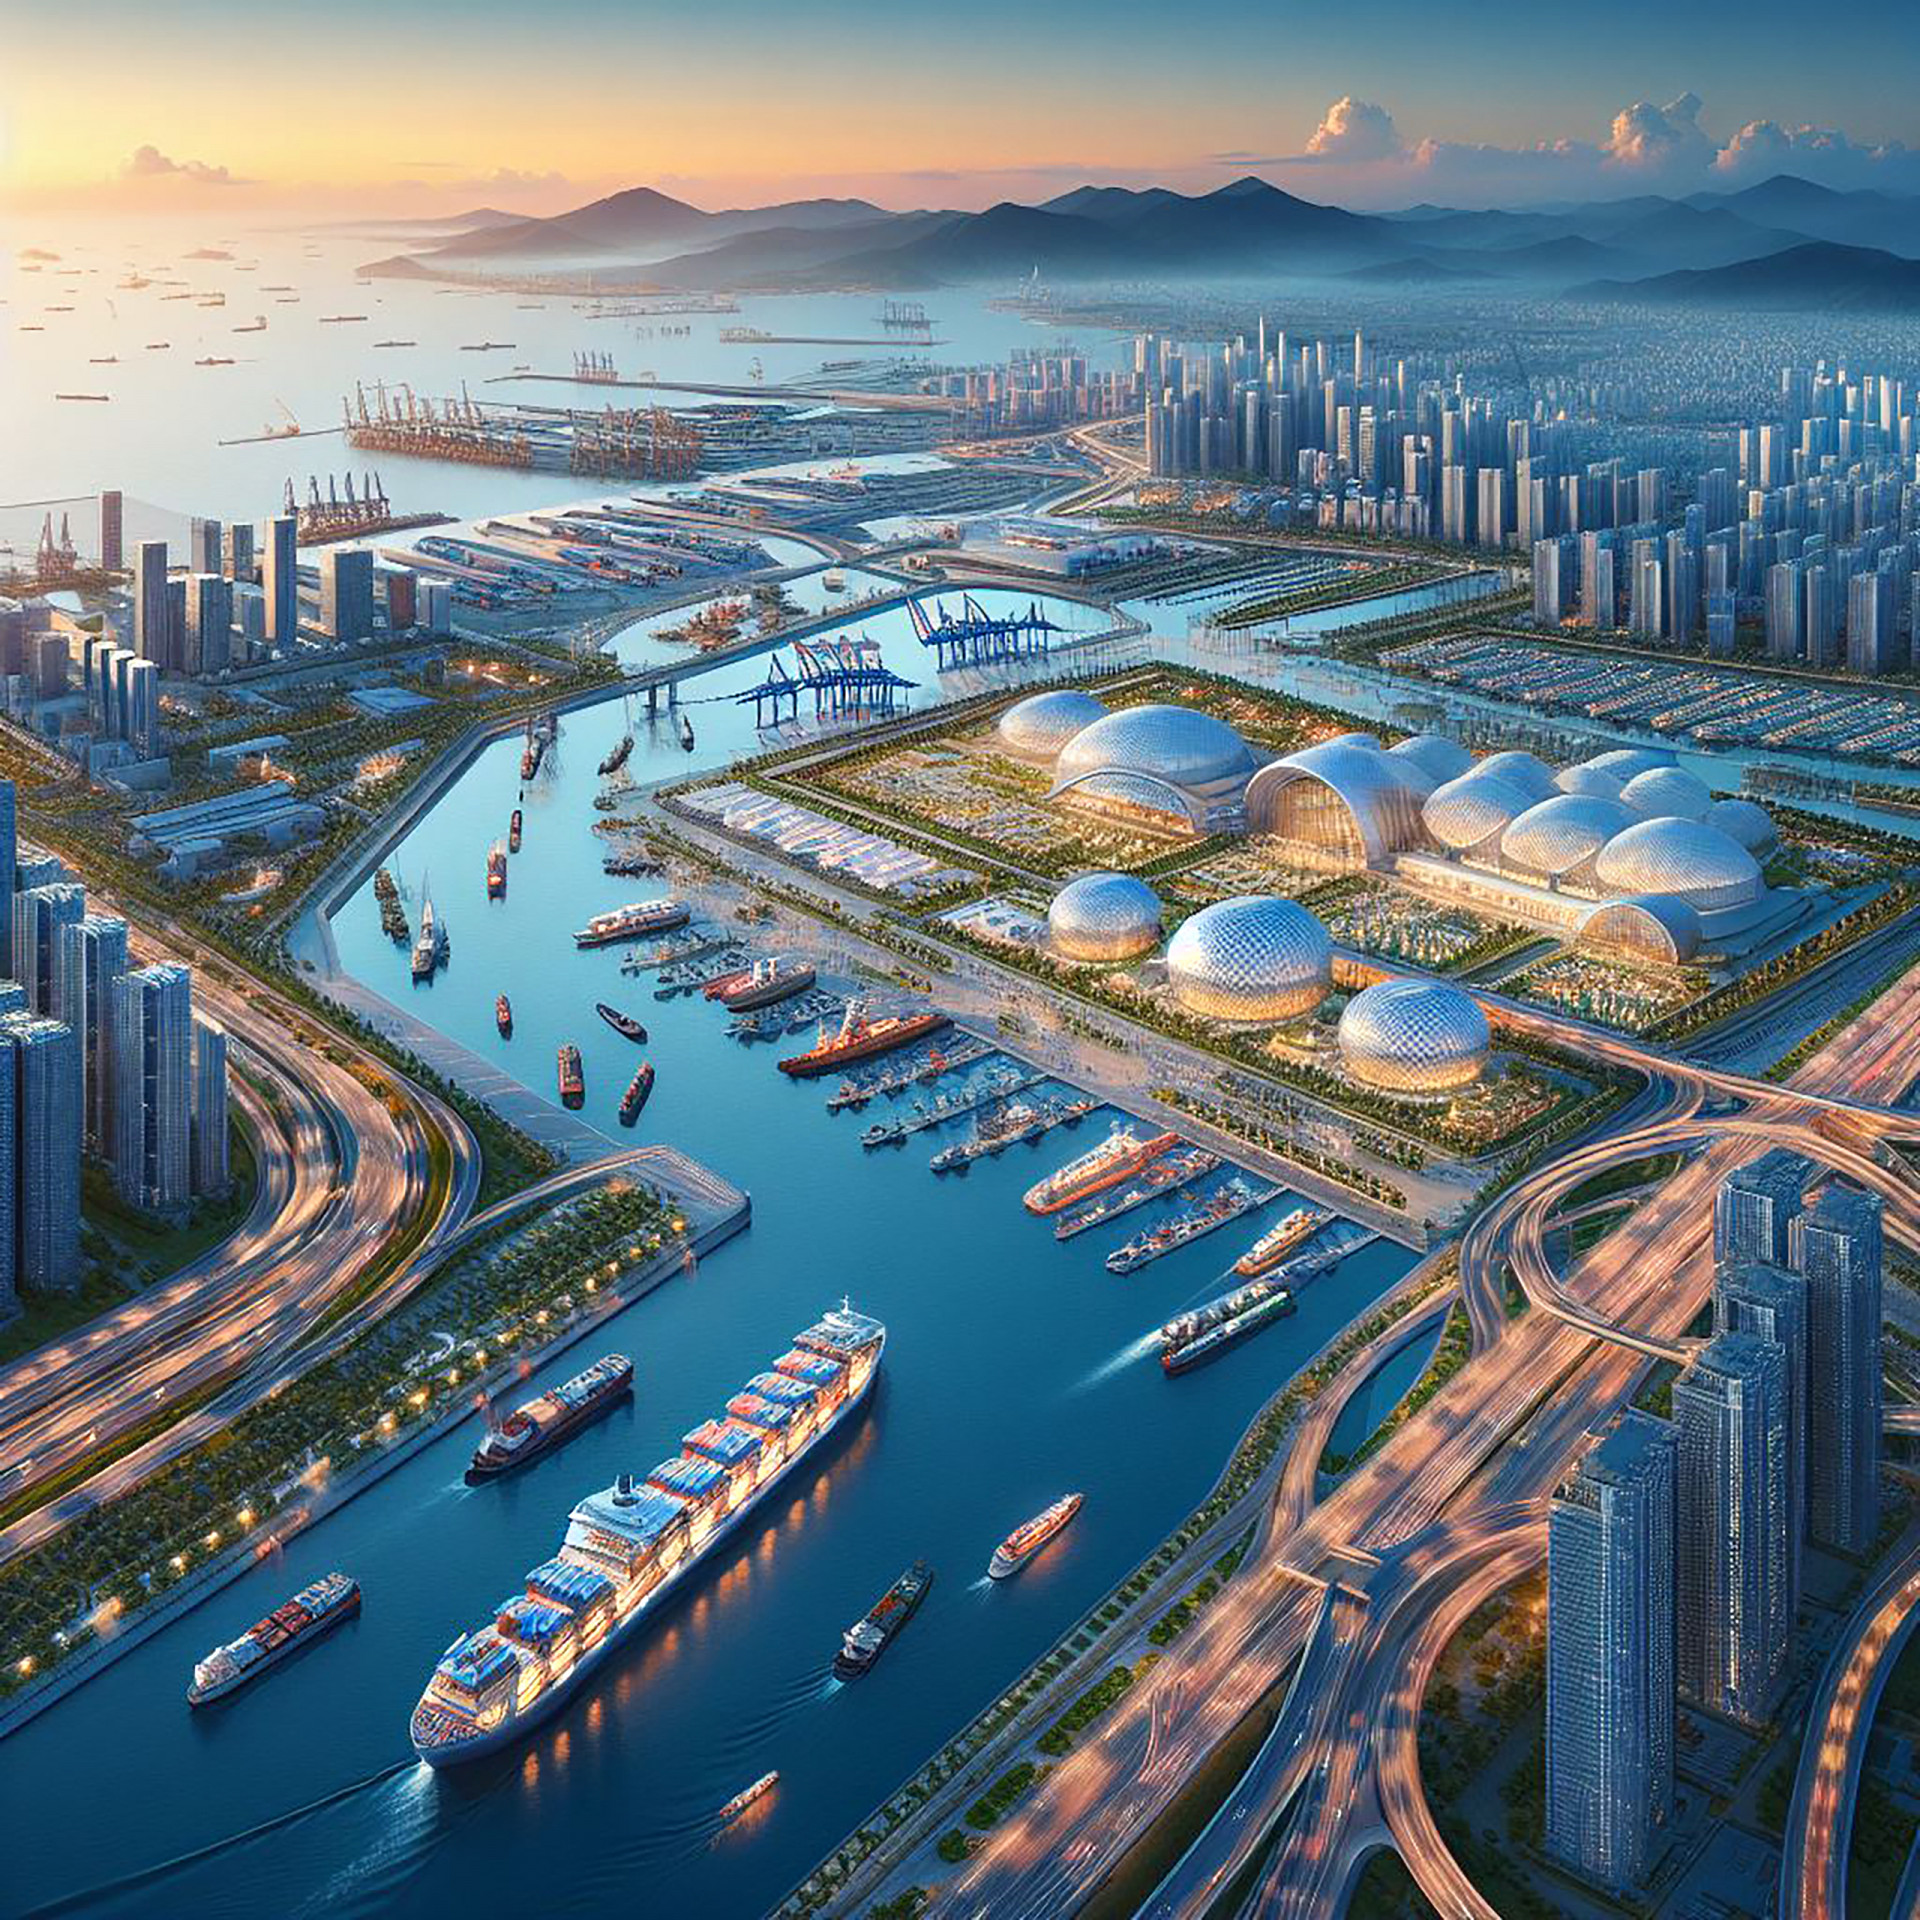 Cảng Quốc tế Vân Phong  năm 2050 là cảng biển trung chuyển nước sâu lớn nhất khu vực Đông Nam Á, với nhiều khu công nghiệp tầm cỡ quốc tế, kết hợp các khu du lịch nghỉ dưỡng cao cấp, với nhiều dịch vụ giải trí hiện đại…